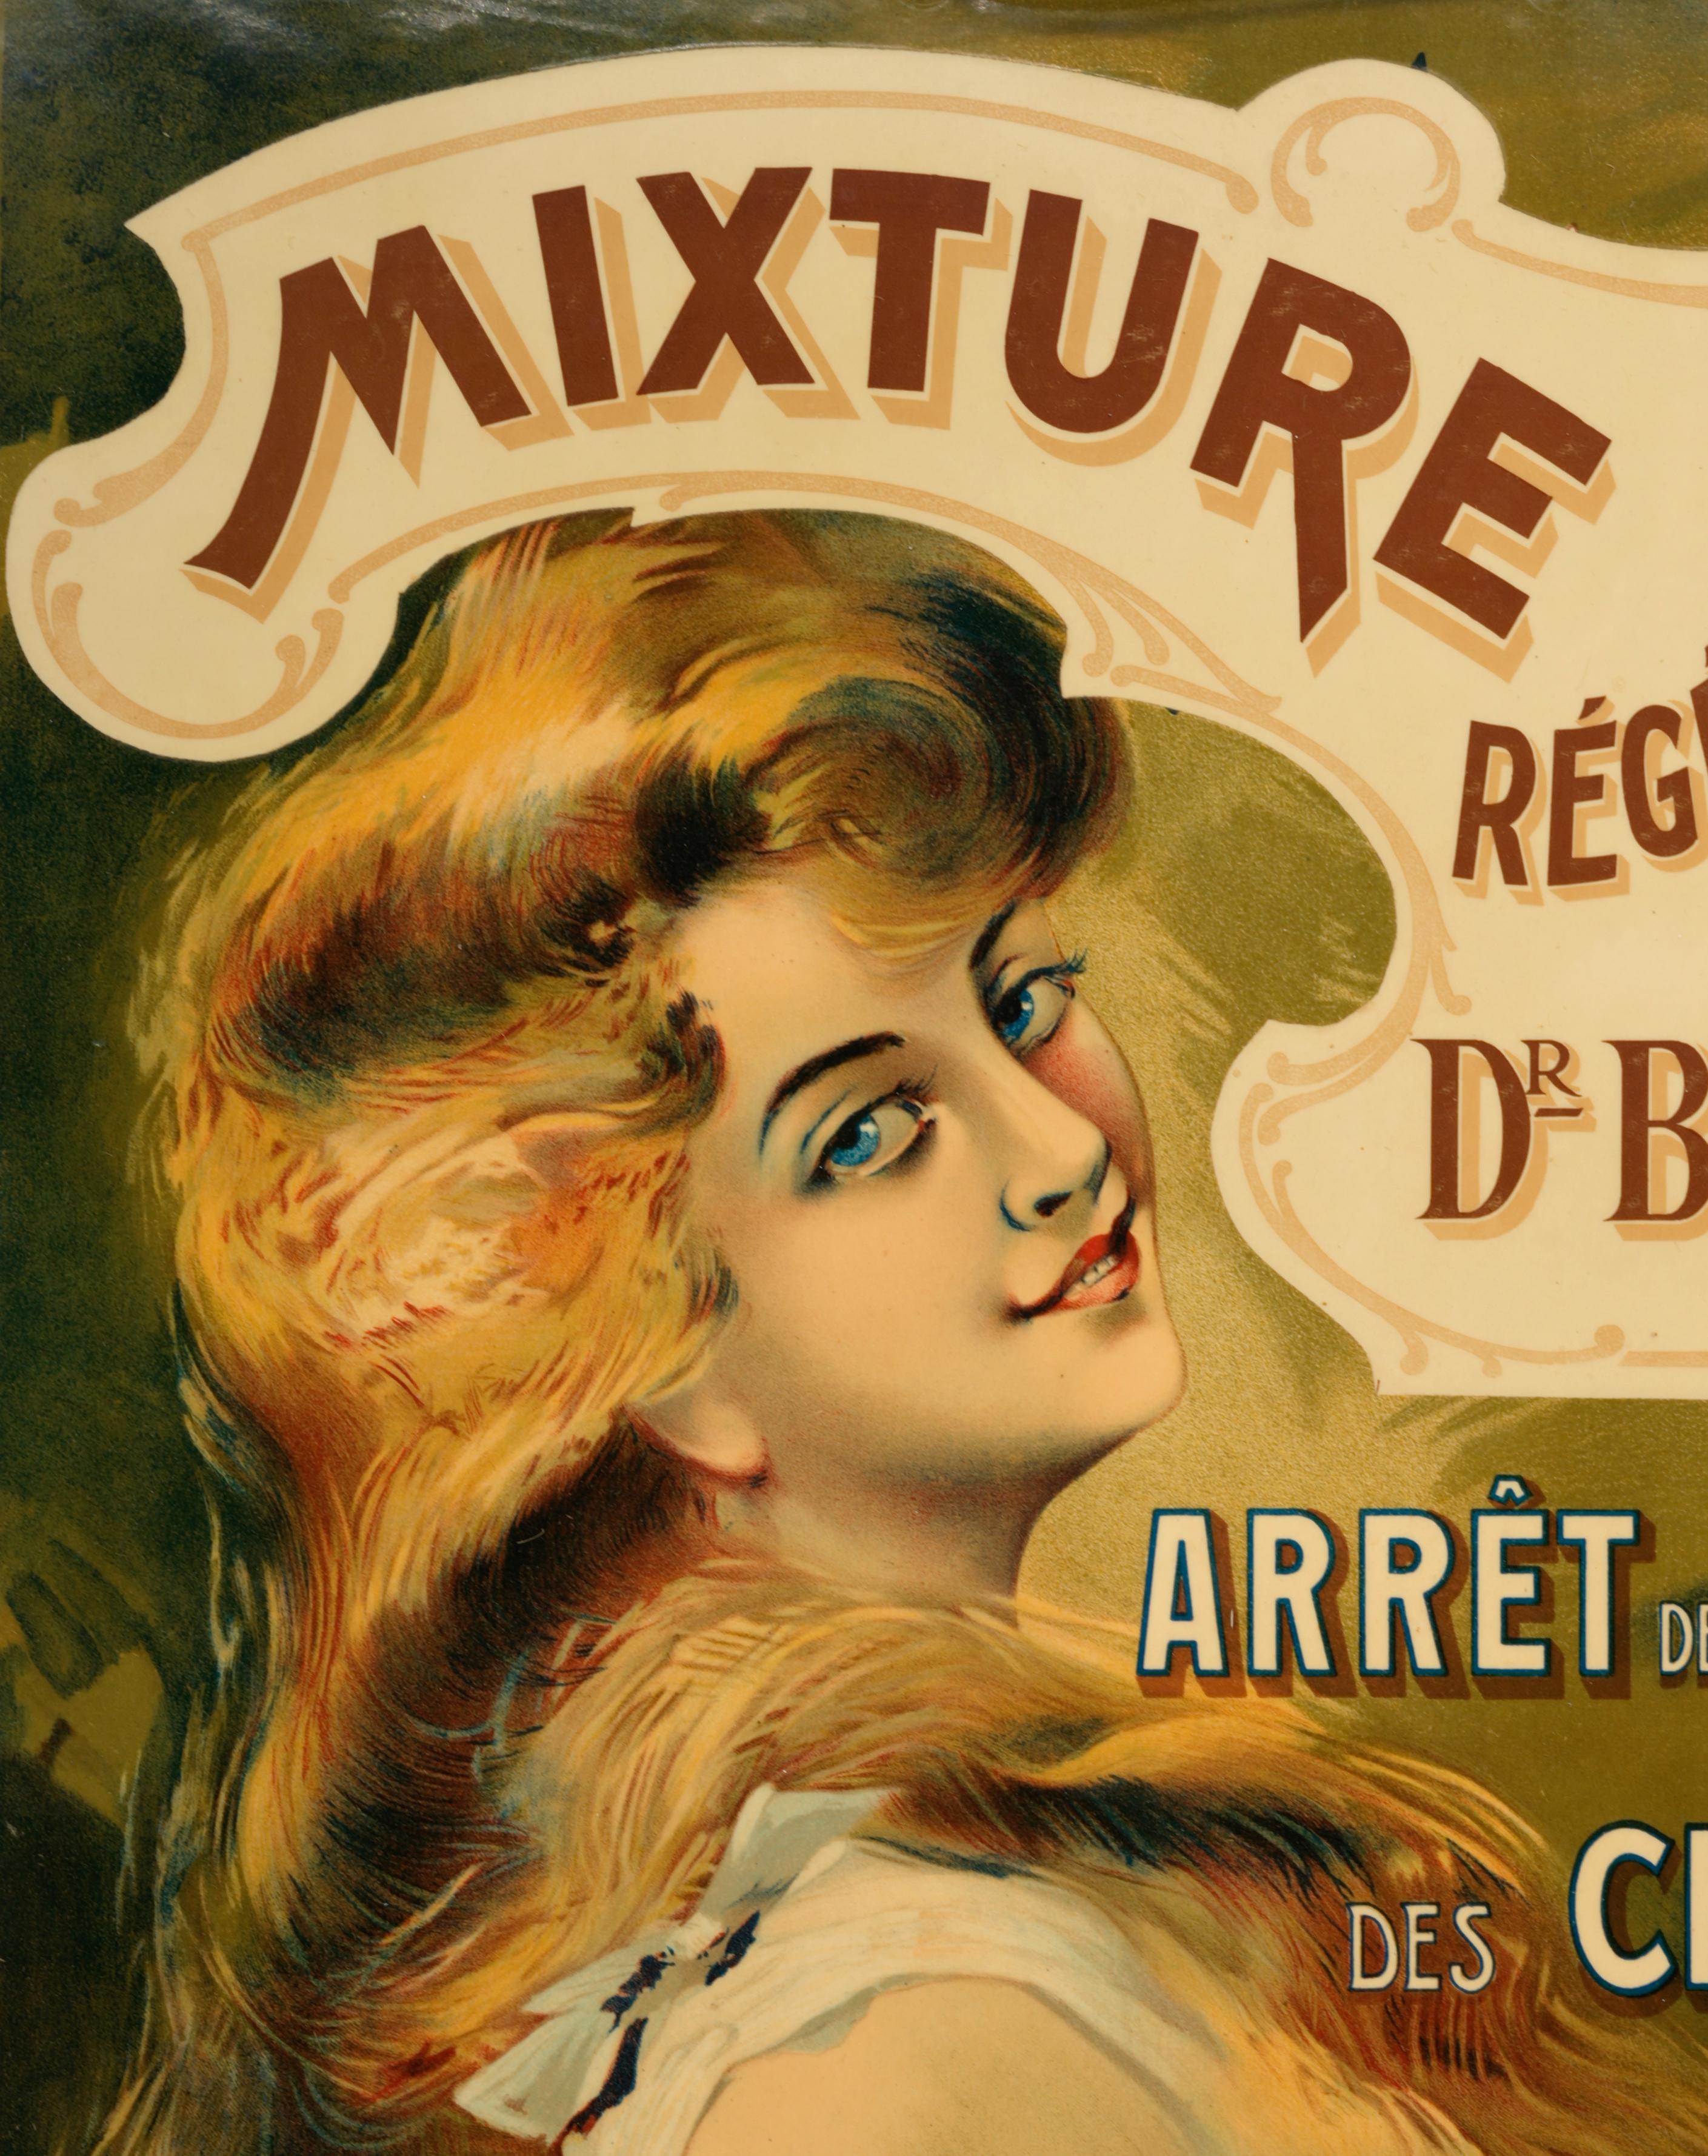 Affiche murale ADS, France, années 1890. Le glacis est un procédé inventé à la fin du XIXe siècle qui consiste à fixer une affiche sur un support en l'emprisonnant sous une enveloppe de vernis spécial. Cela durcit l'affiche, la protège et lui donne